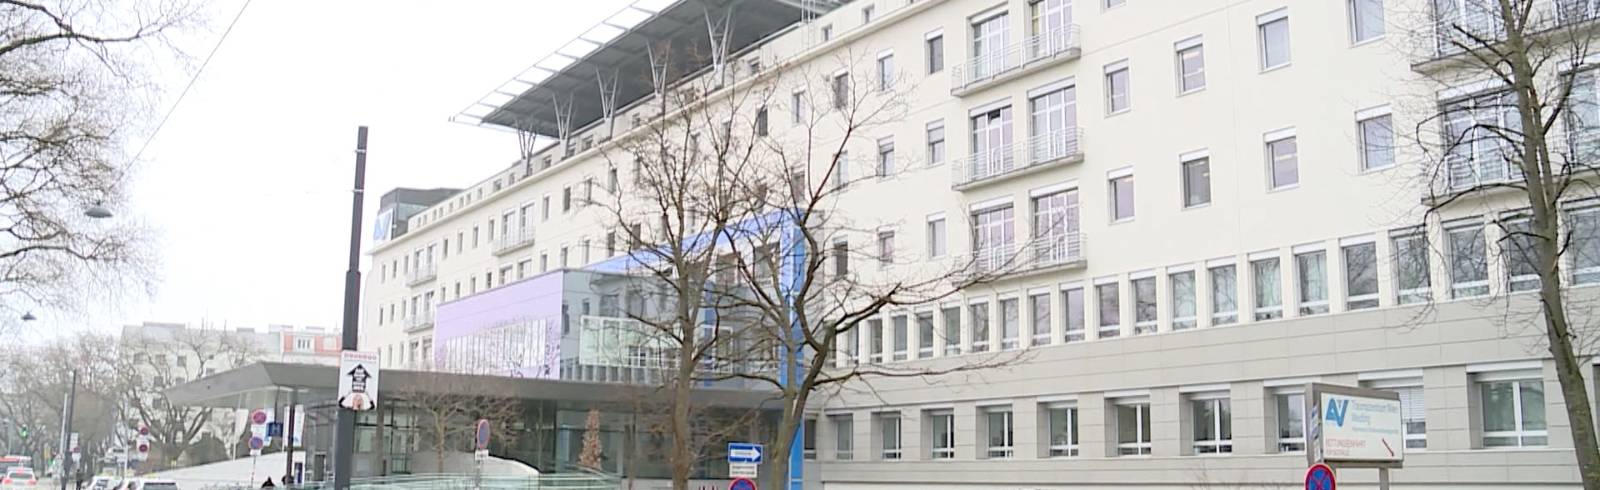 Lorenz-Böhler-Spital: Containerlösung geplant